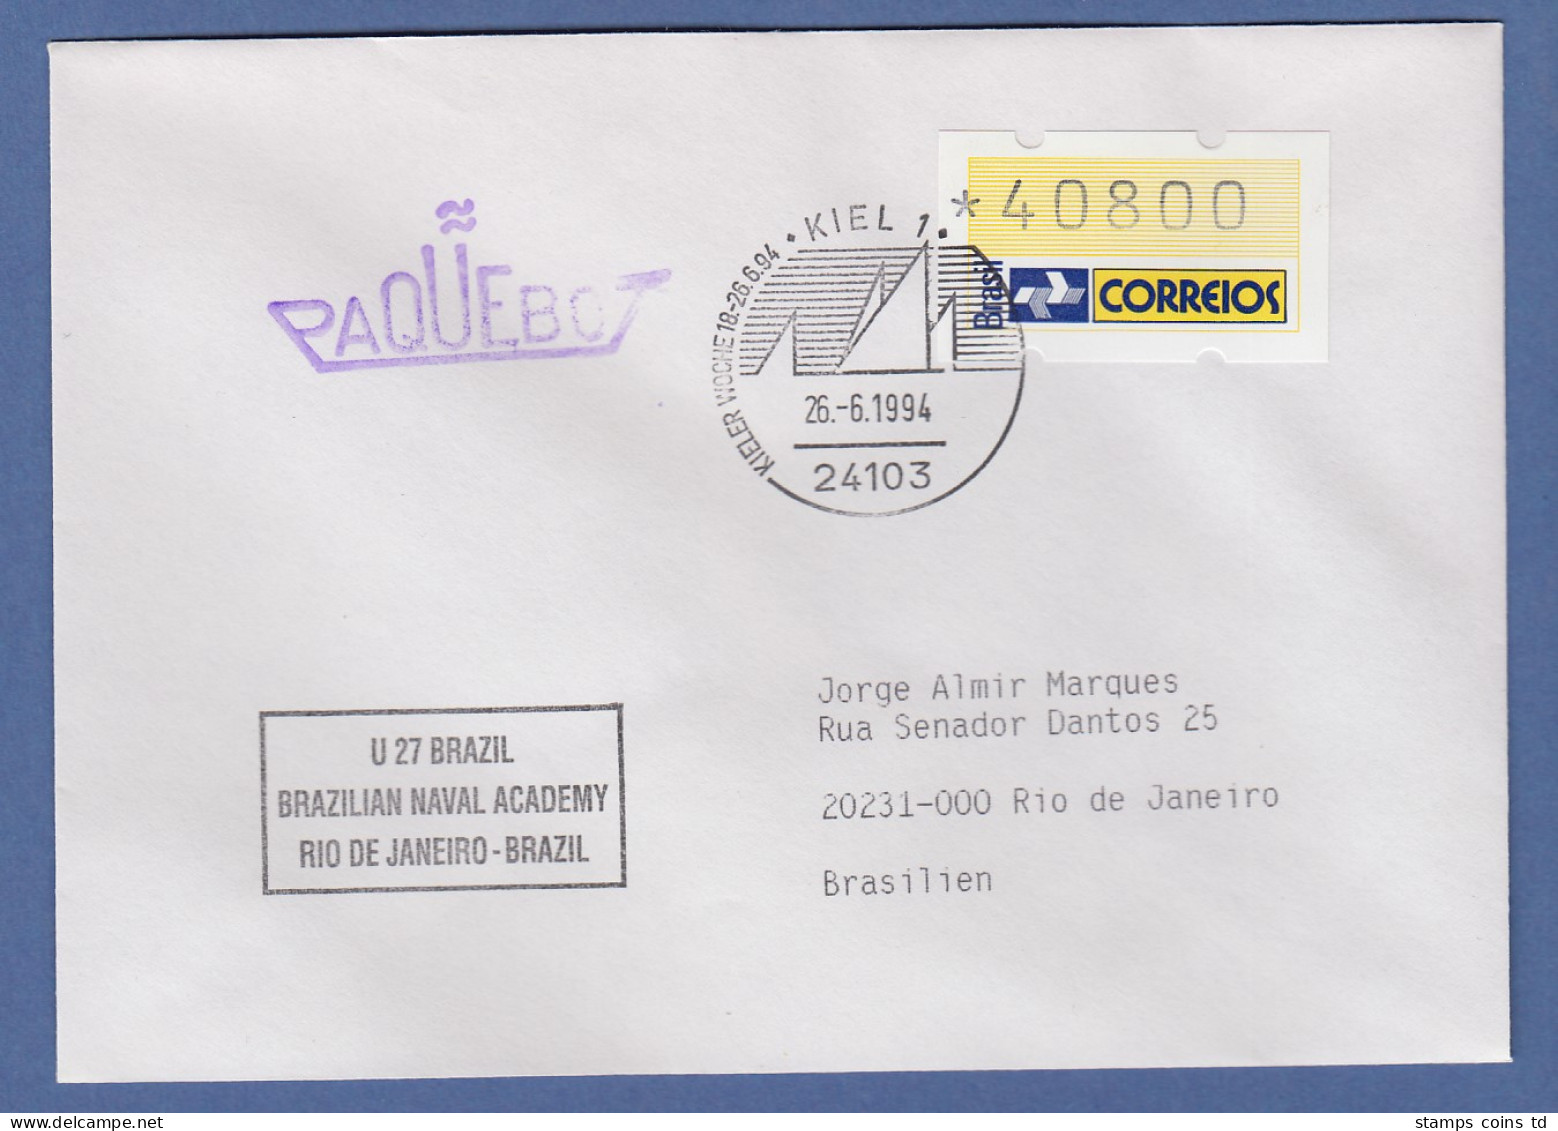 Brasilien ATM Dauerausgabe, Mi.-Nr. 4, Wert 40800 Auf Paquebot-Brief, O Kiel - Vignettes D'affranchissement (Frama)